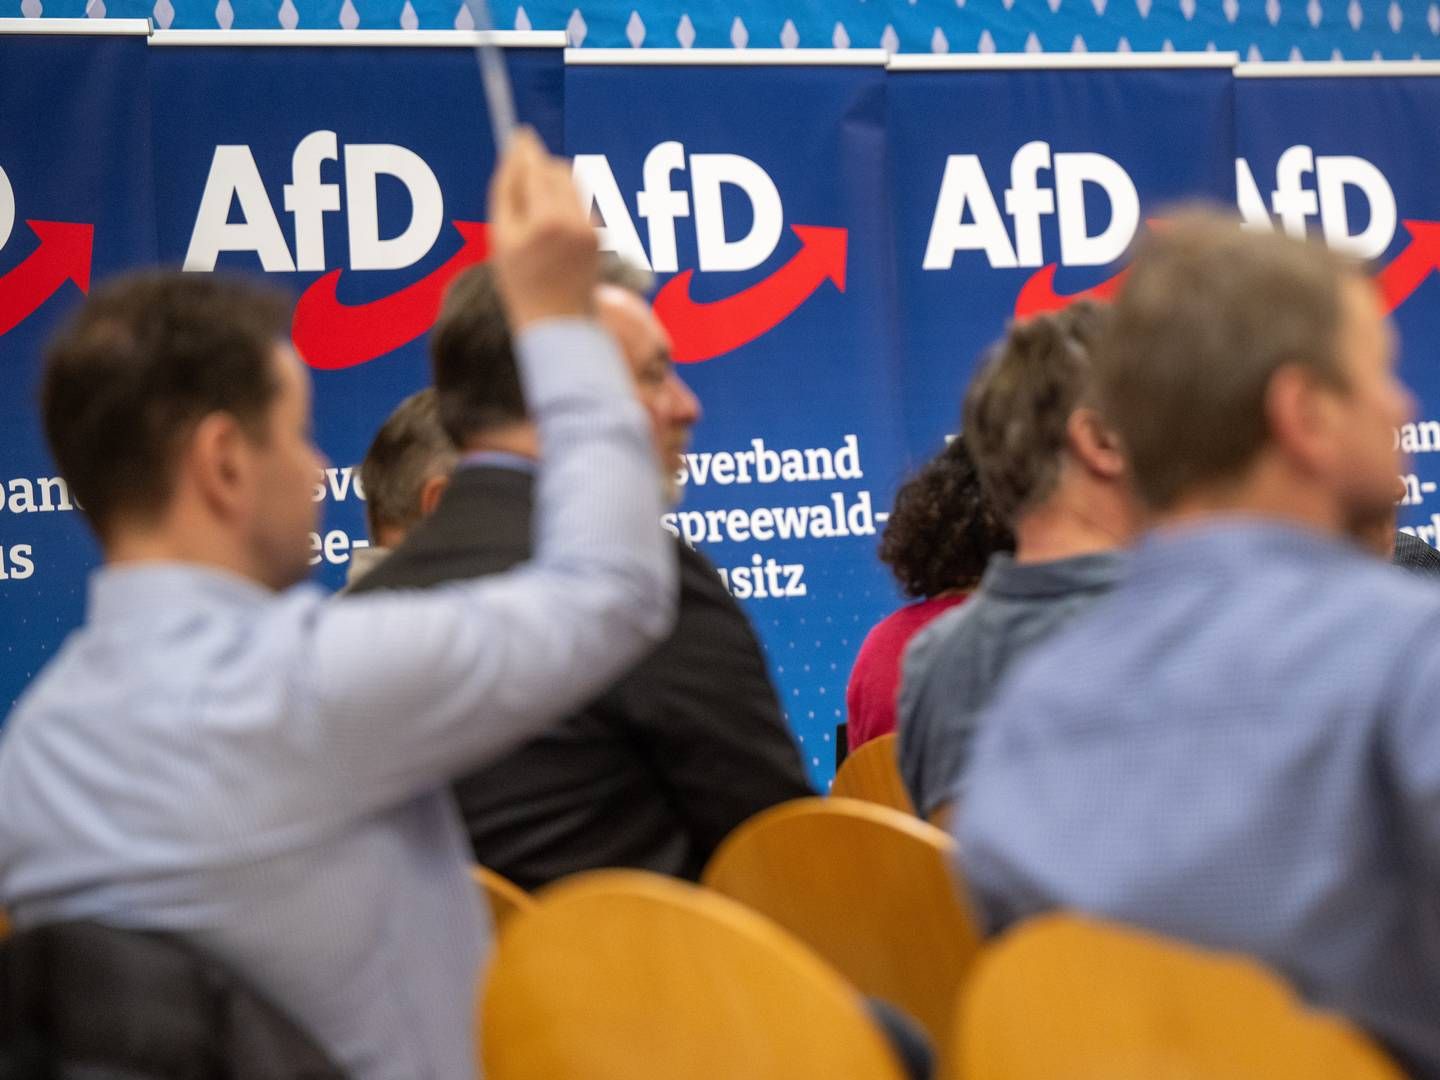 Teilnehmer des Landesparteitags AfD Brandenburg halten bei einer Abstimmung ihre Stimmkarten hoch. | Foto: picture alliance/dpa | Monika Skolimowska